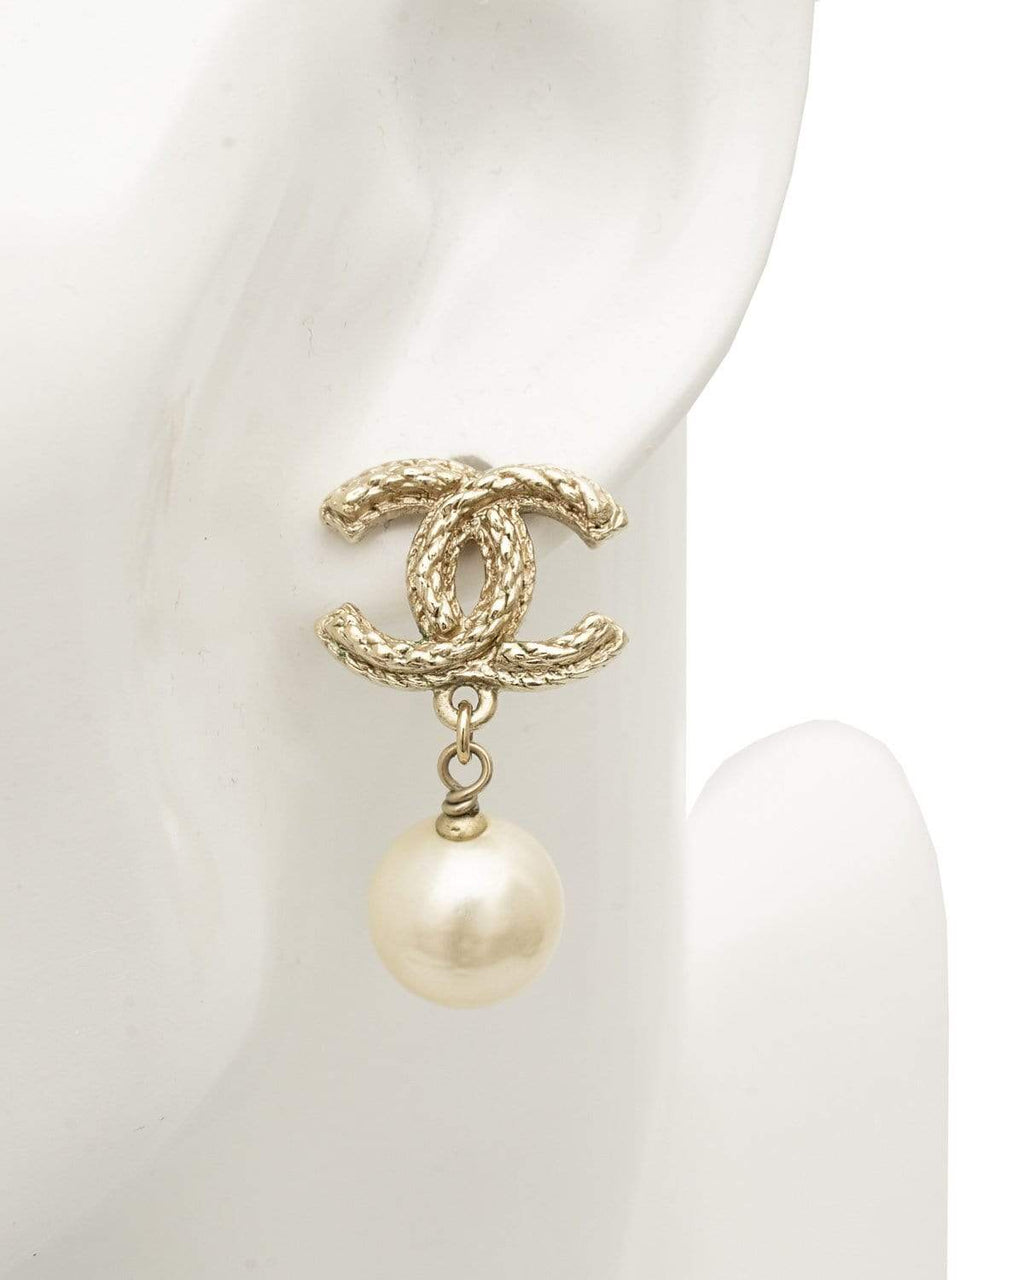 Share 162+ chanel pearl dangle earrings best 